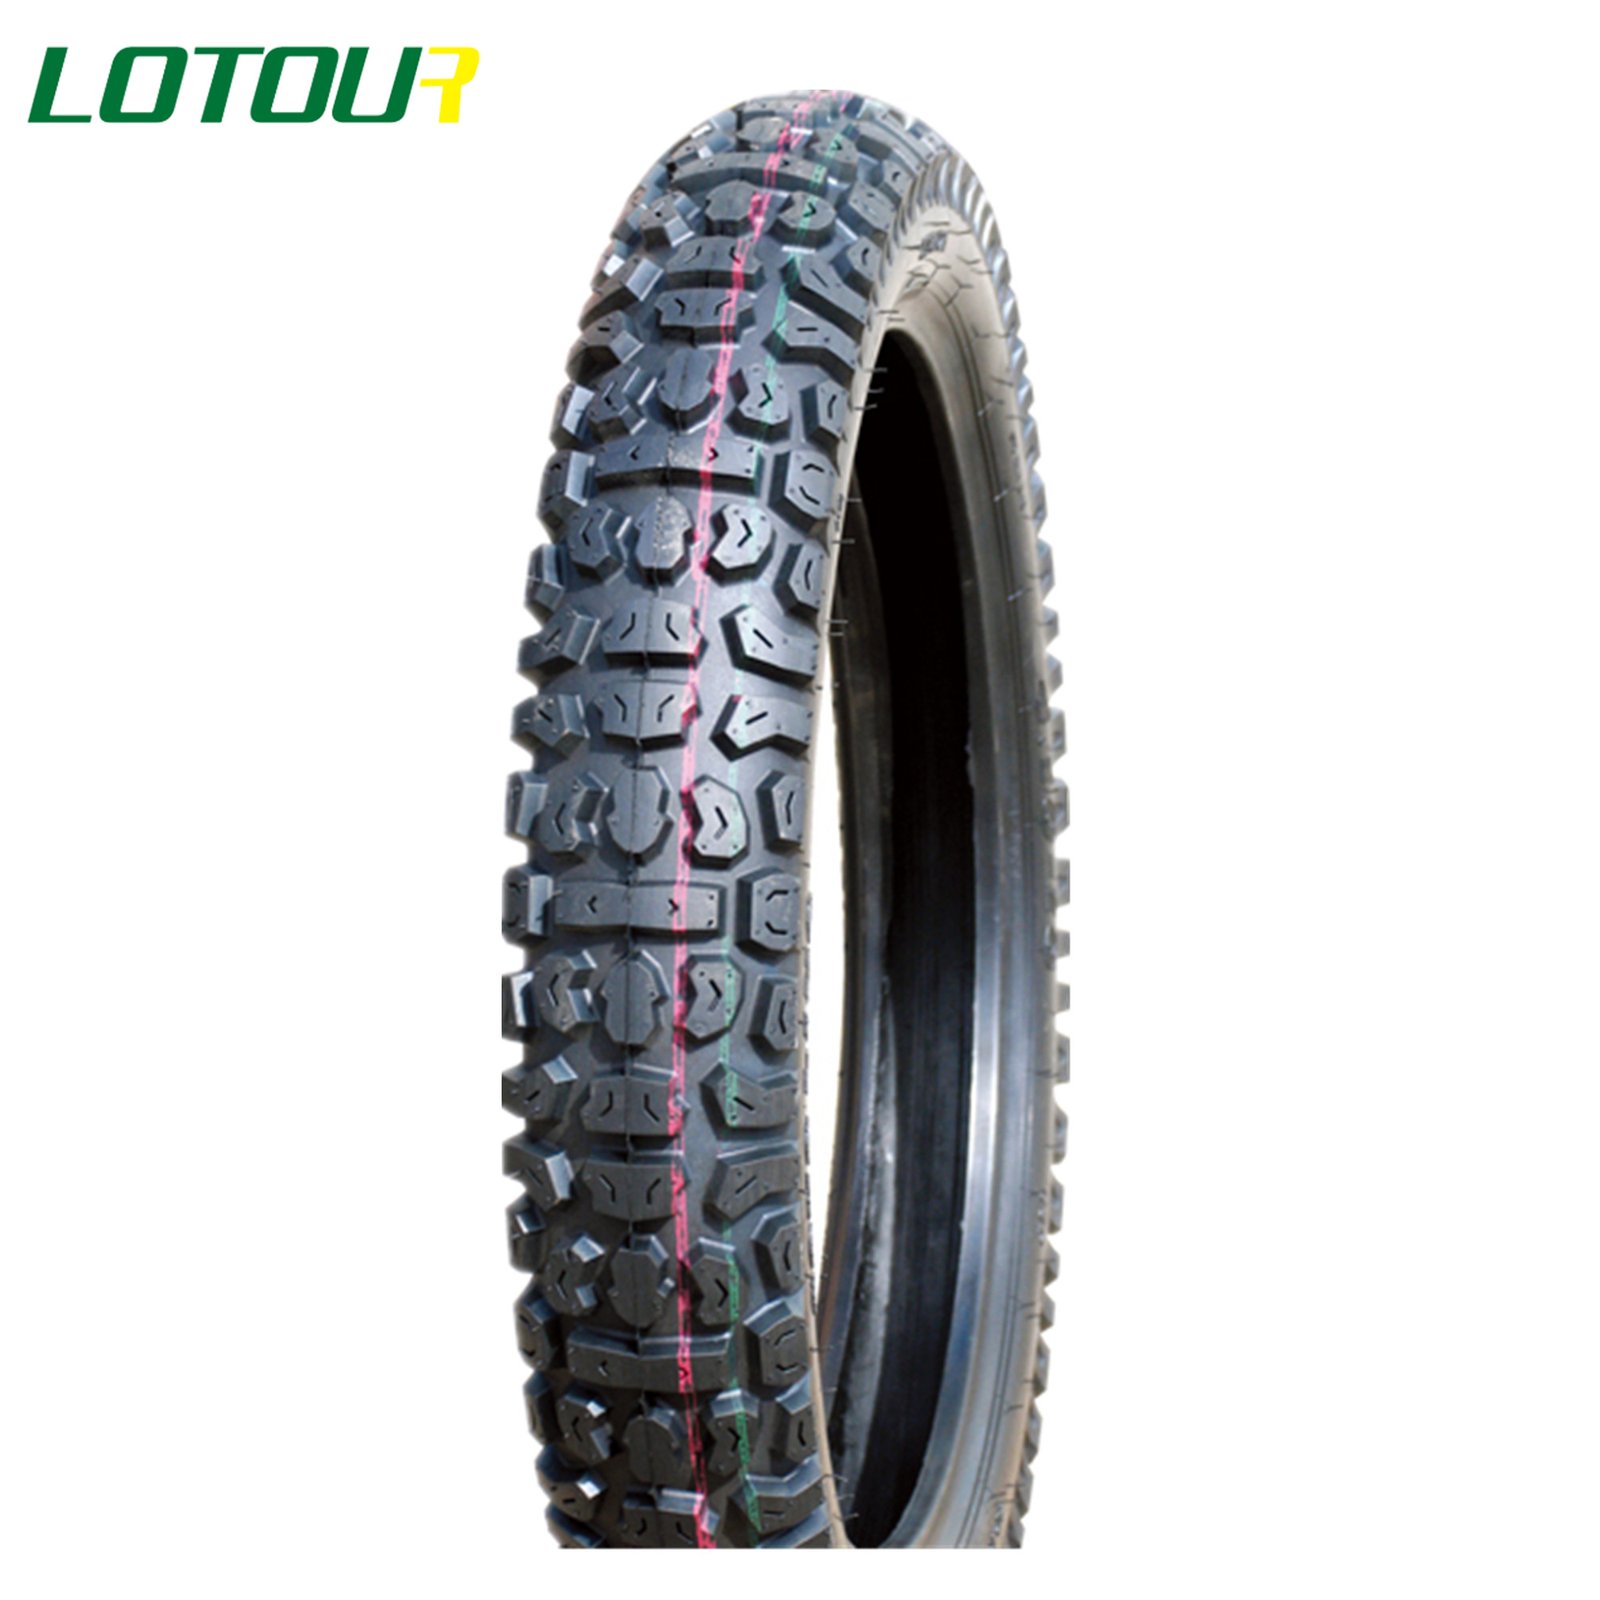 Lotour Tire M3071